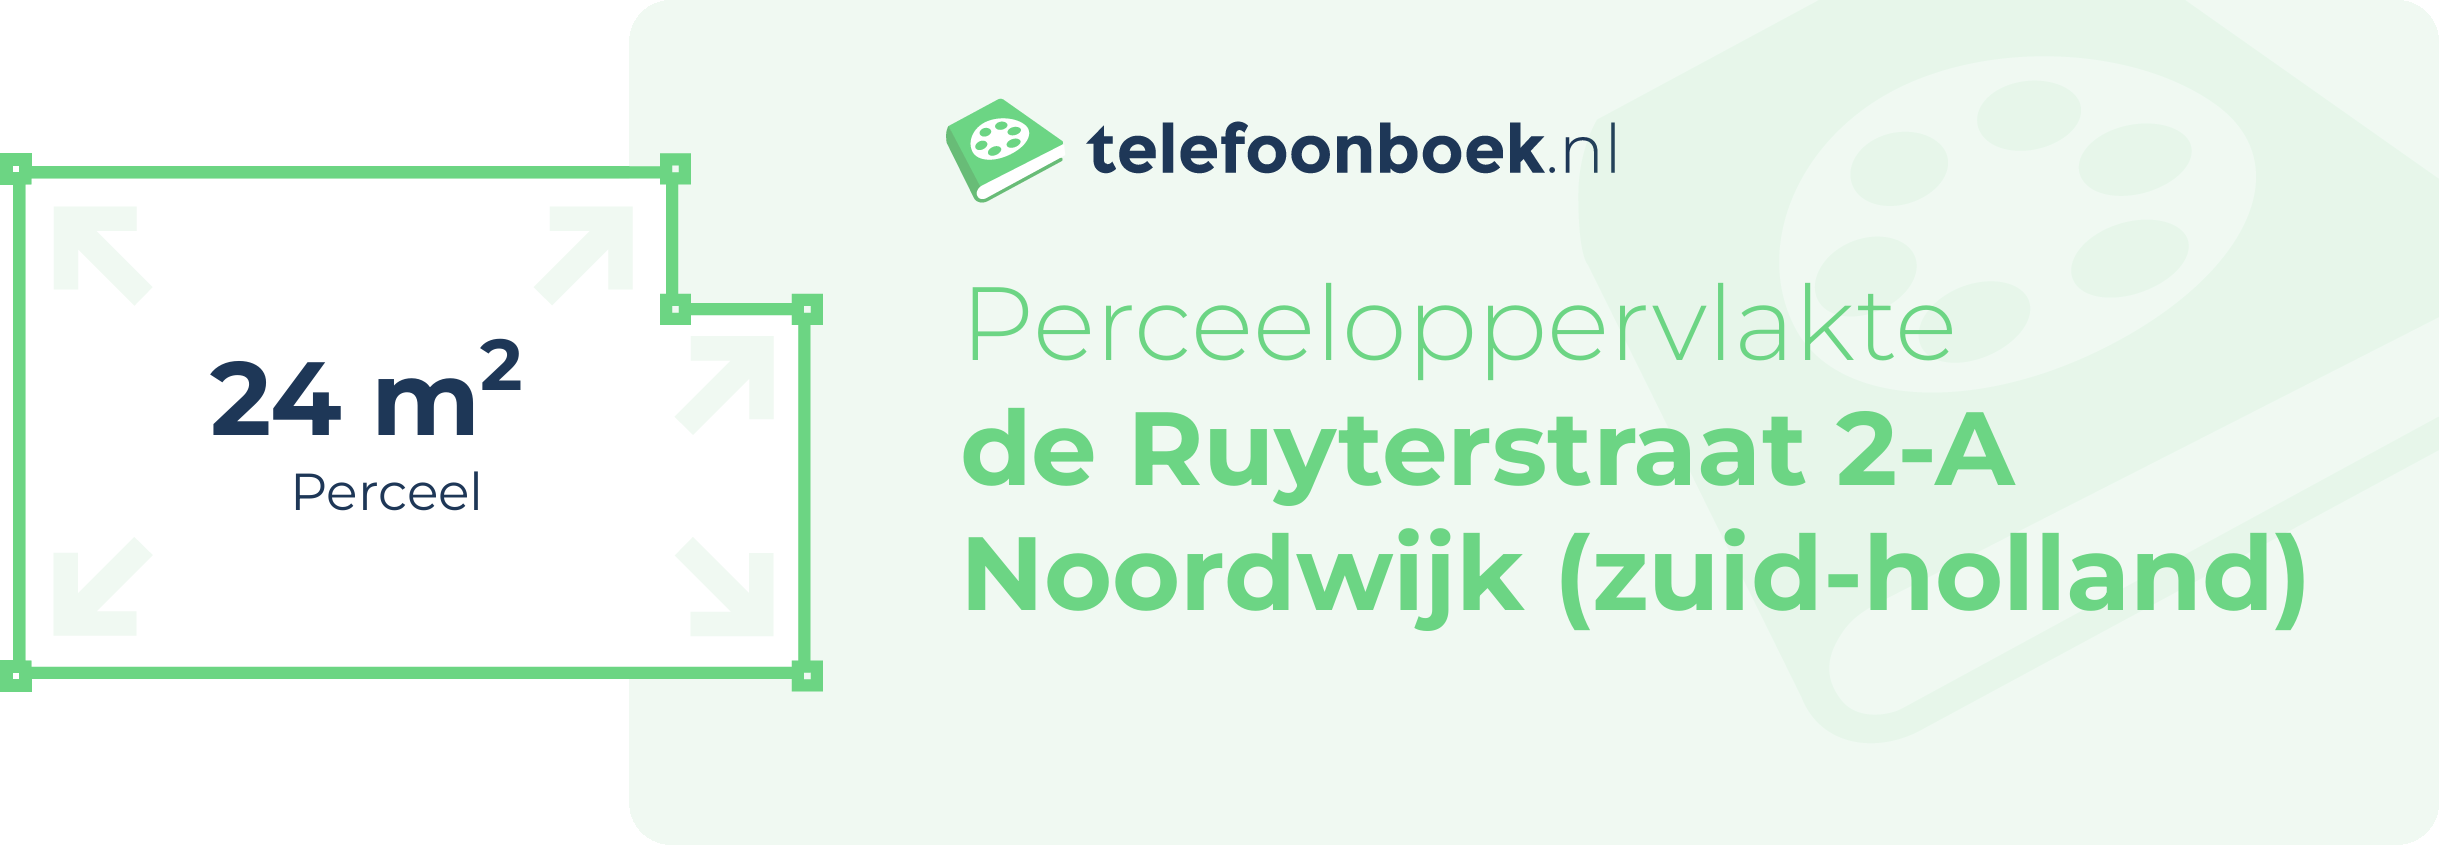 Perceeloppervlakte De Ruyterstraat 2-A Noordwijk (Zuid-Holland)